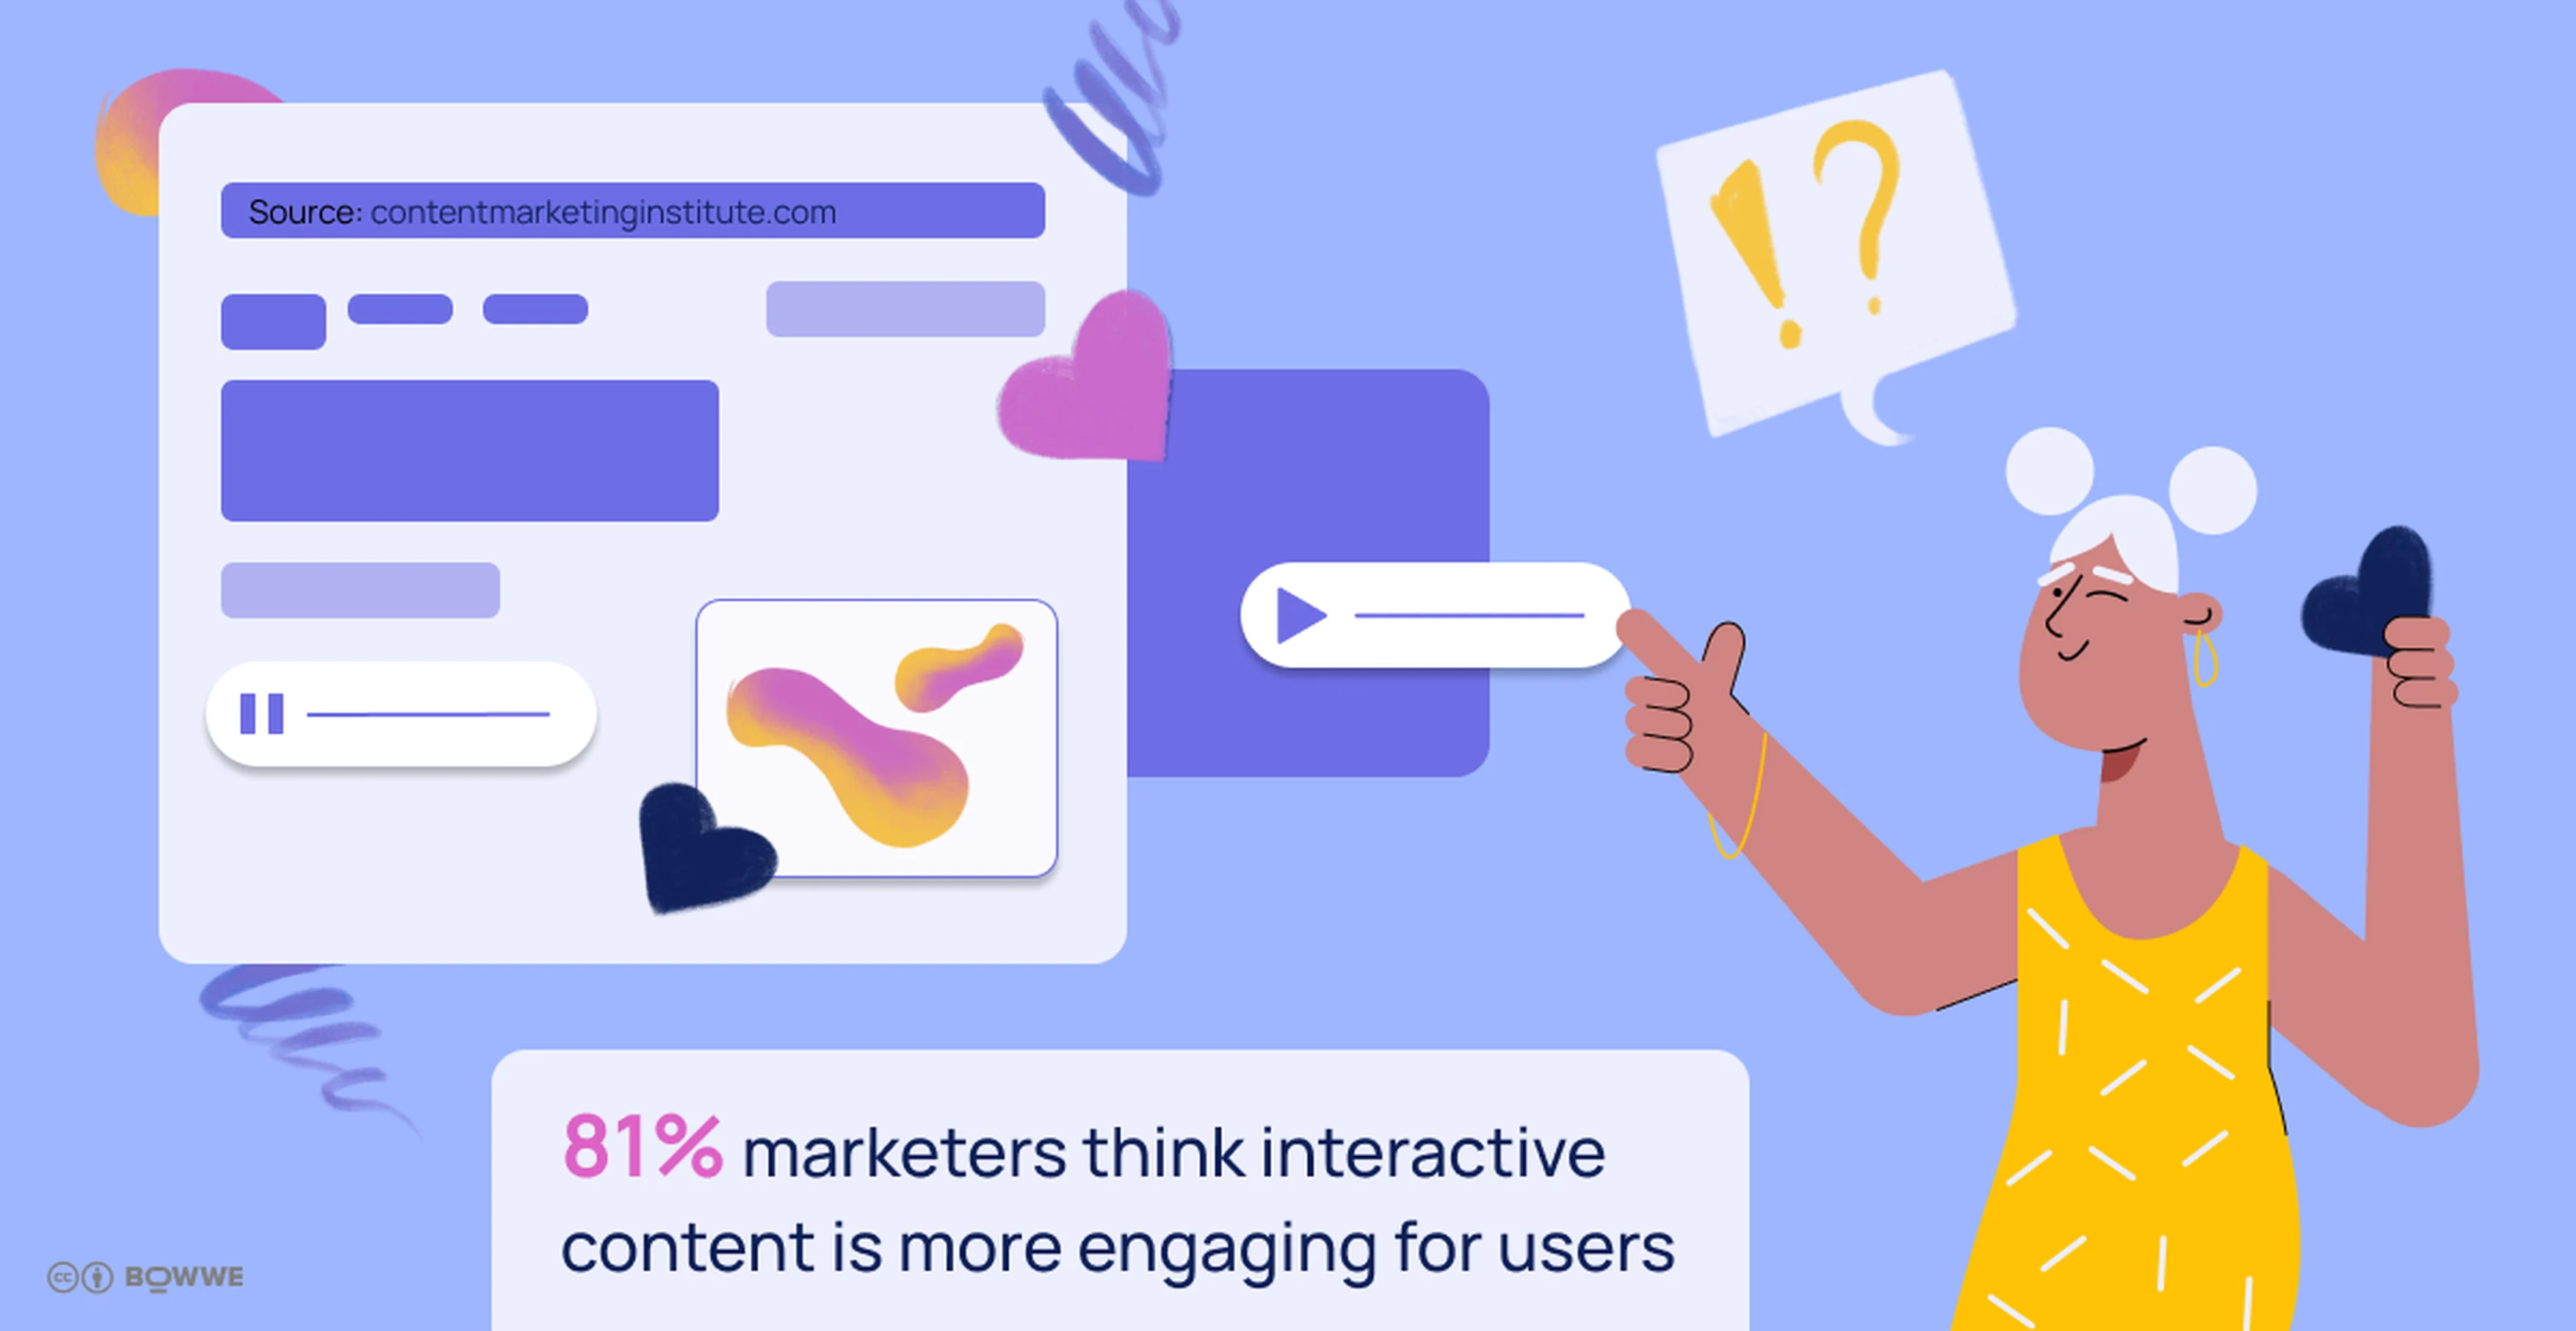 Żółto-zielona grafika z tekstem „81% marketerów uważa, że treści interaktywne są bardziej atrakcyjne dla użytkowników” i grafiką przedstawiającą oko